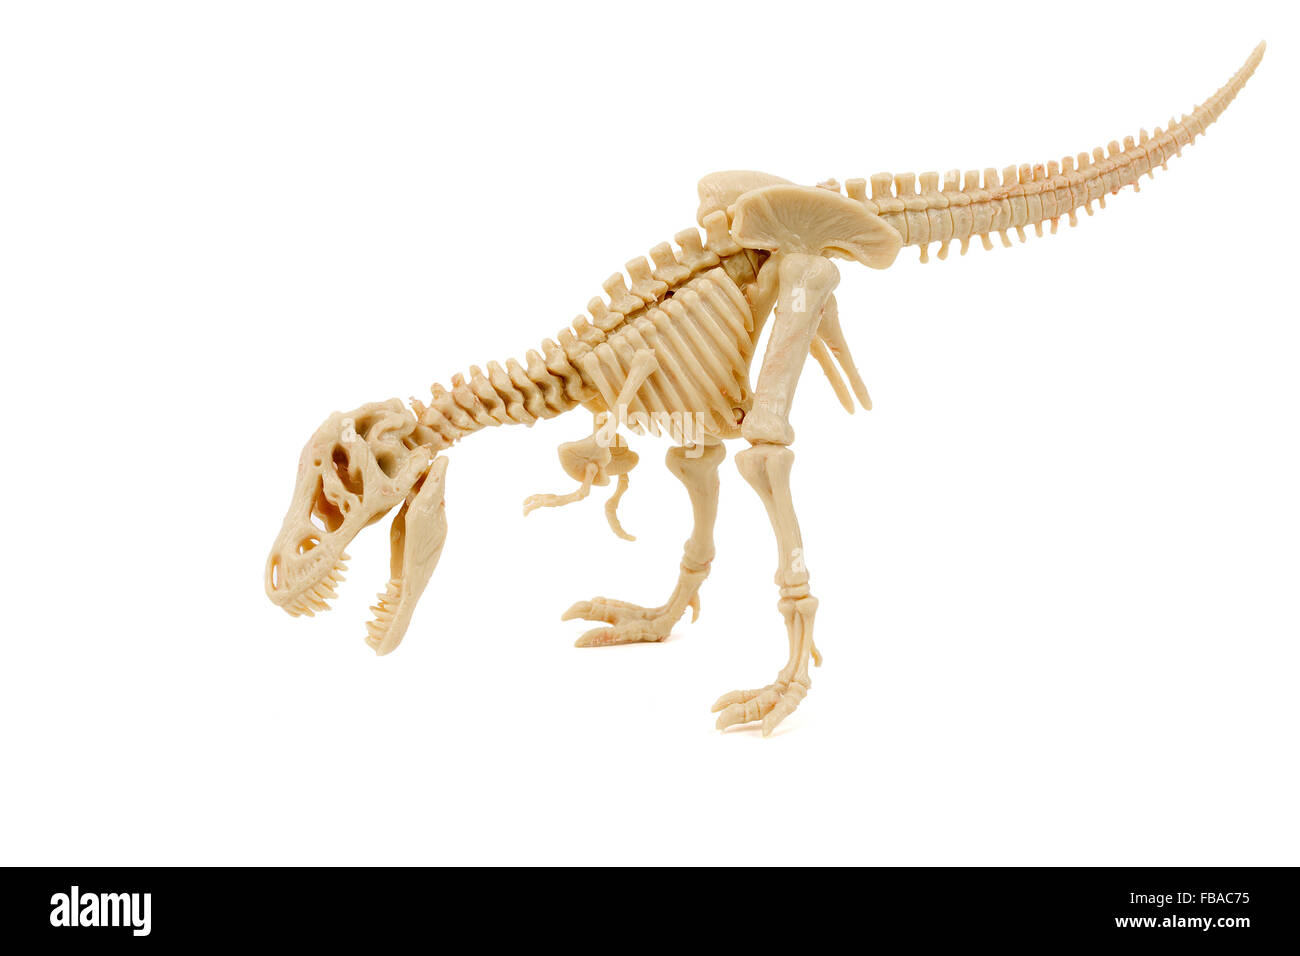 T-Rex Skeleton on a white background Stock Photo